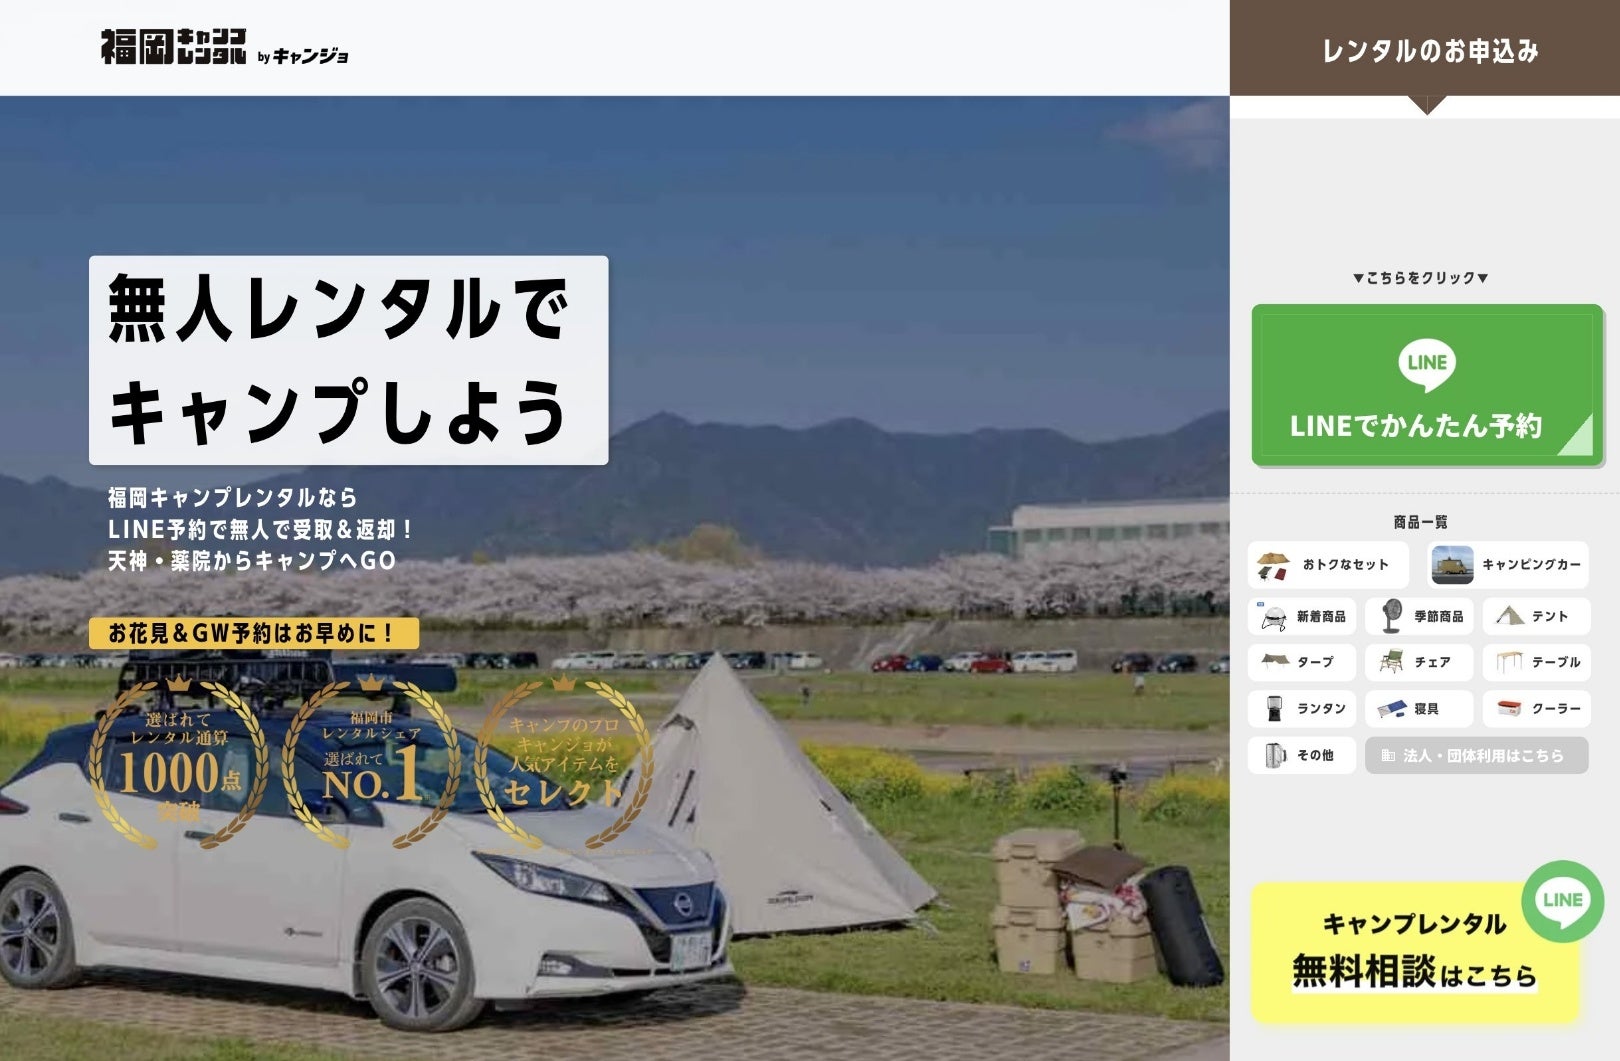 キャンプ道具の無人レンタルサービス「​福岡キャンプレンタル」と福岡・五島でのカスタムバンのレンタルを行う「OSOTO campervan」が業務提携のサブ画像2